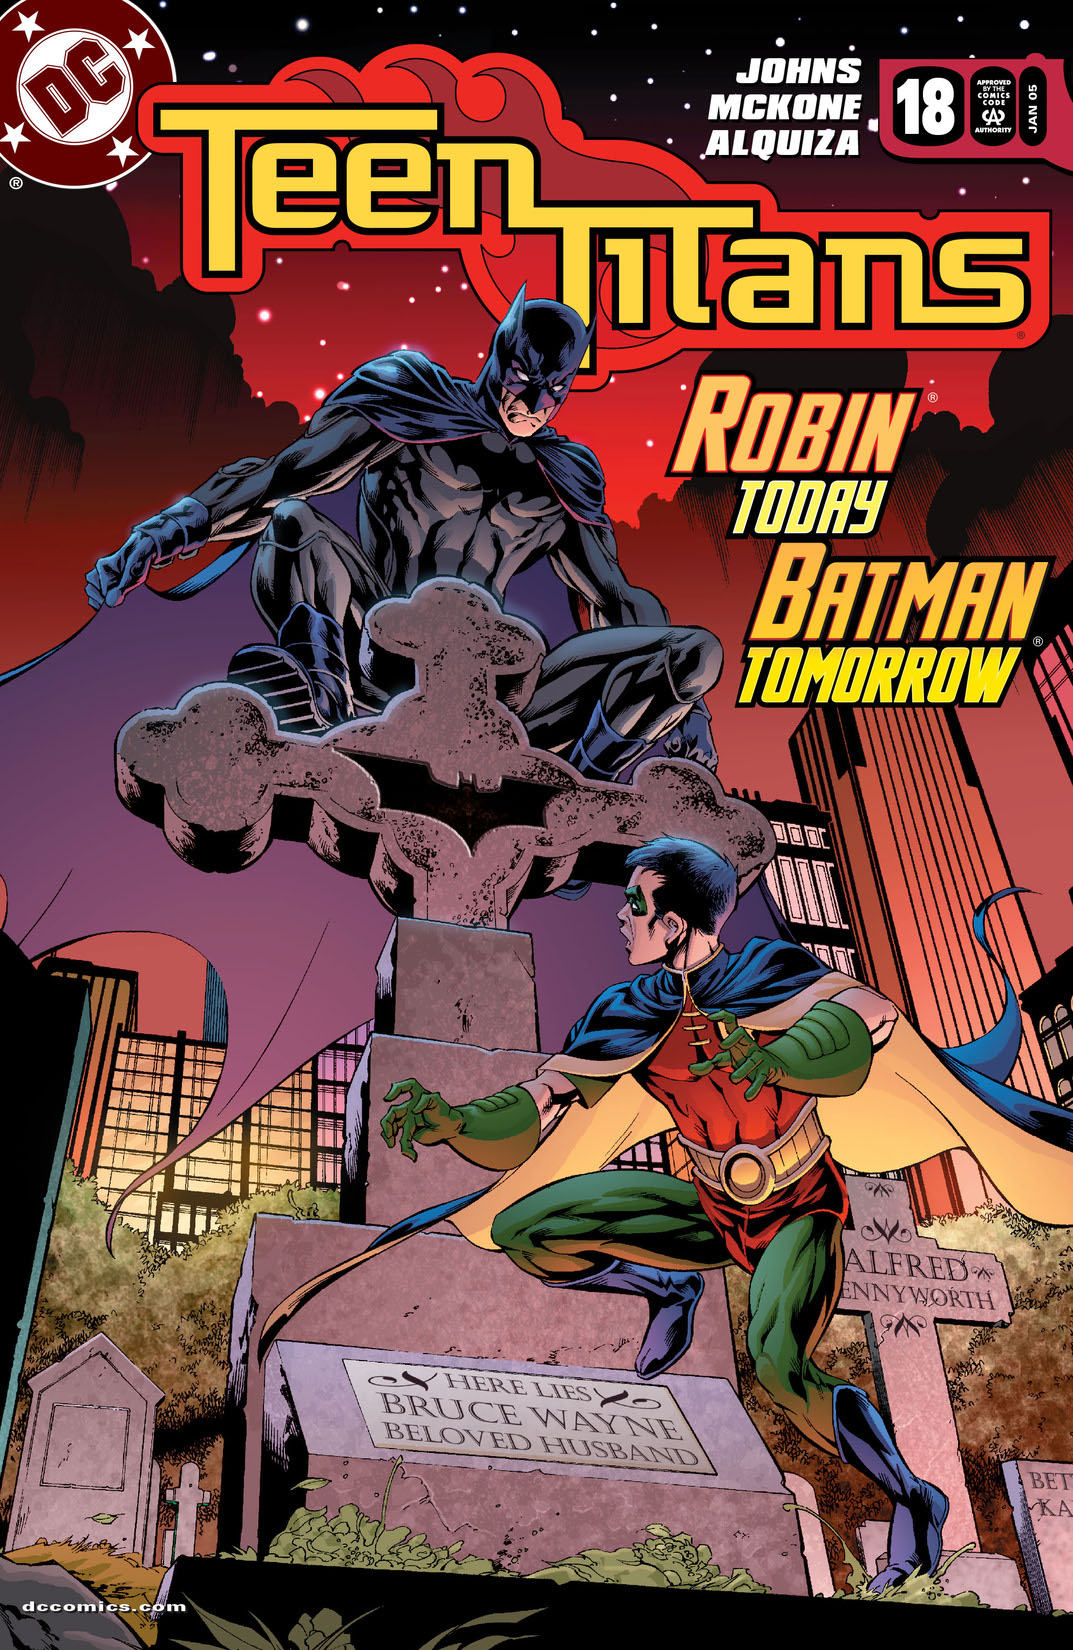 Teen Titans #22 May 2005 DC Comics Johns McKone Alquiza